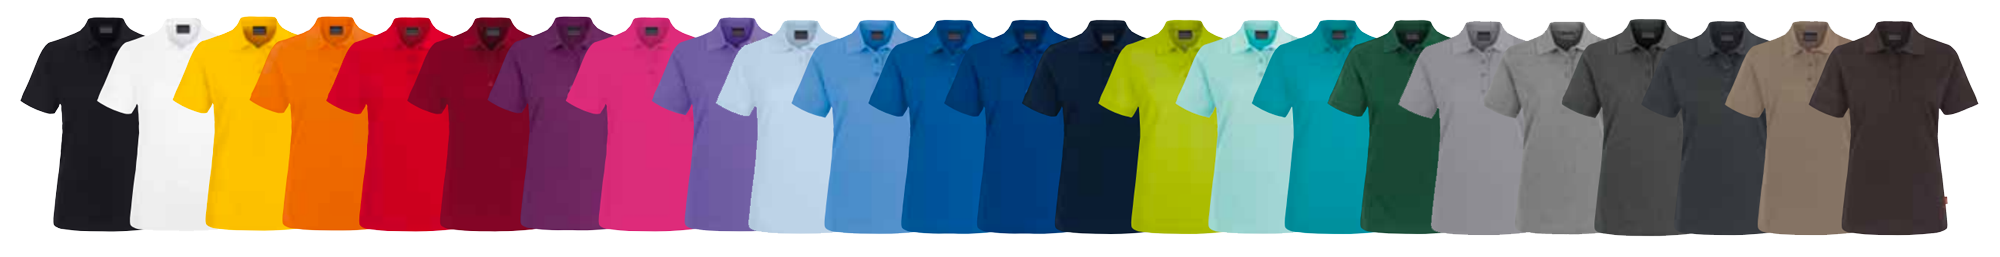 miko® Poloshirts viele verschiedene Farben